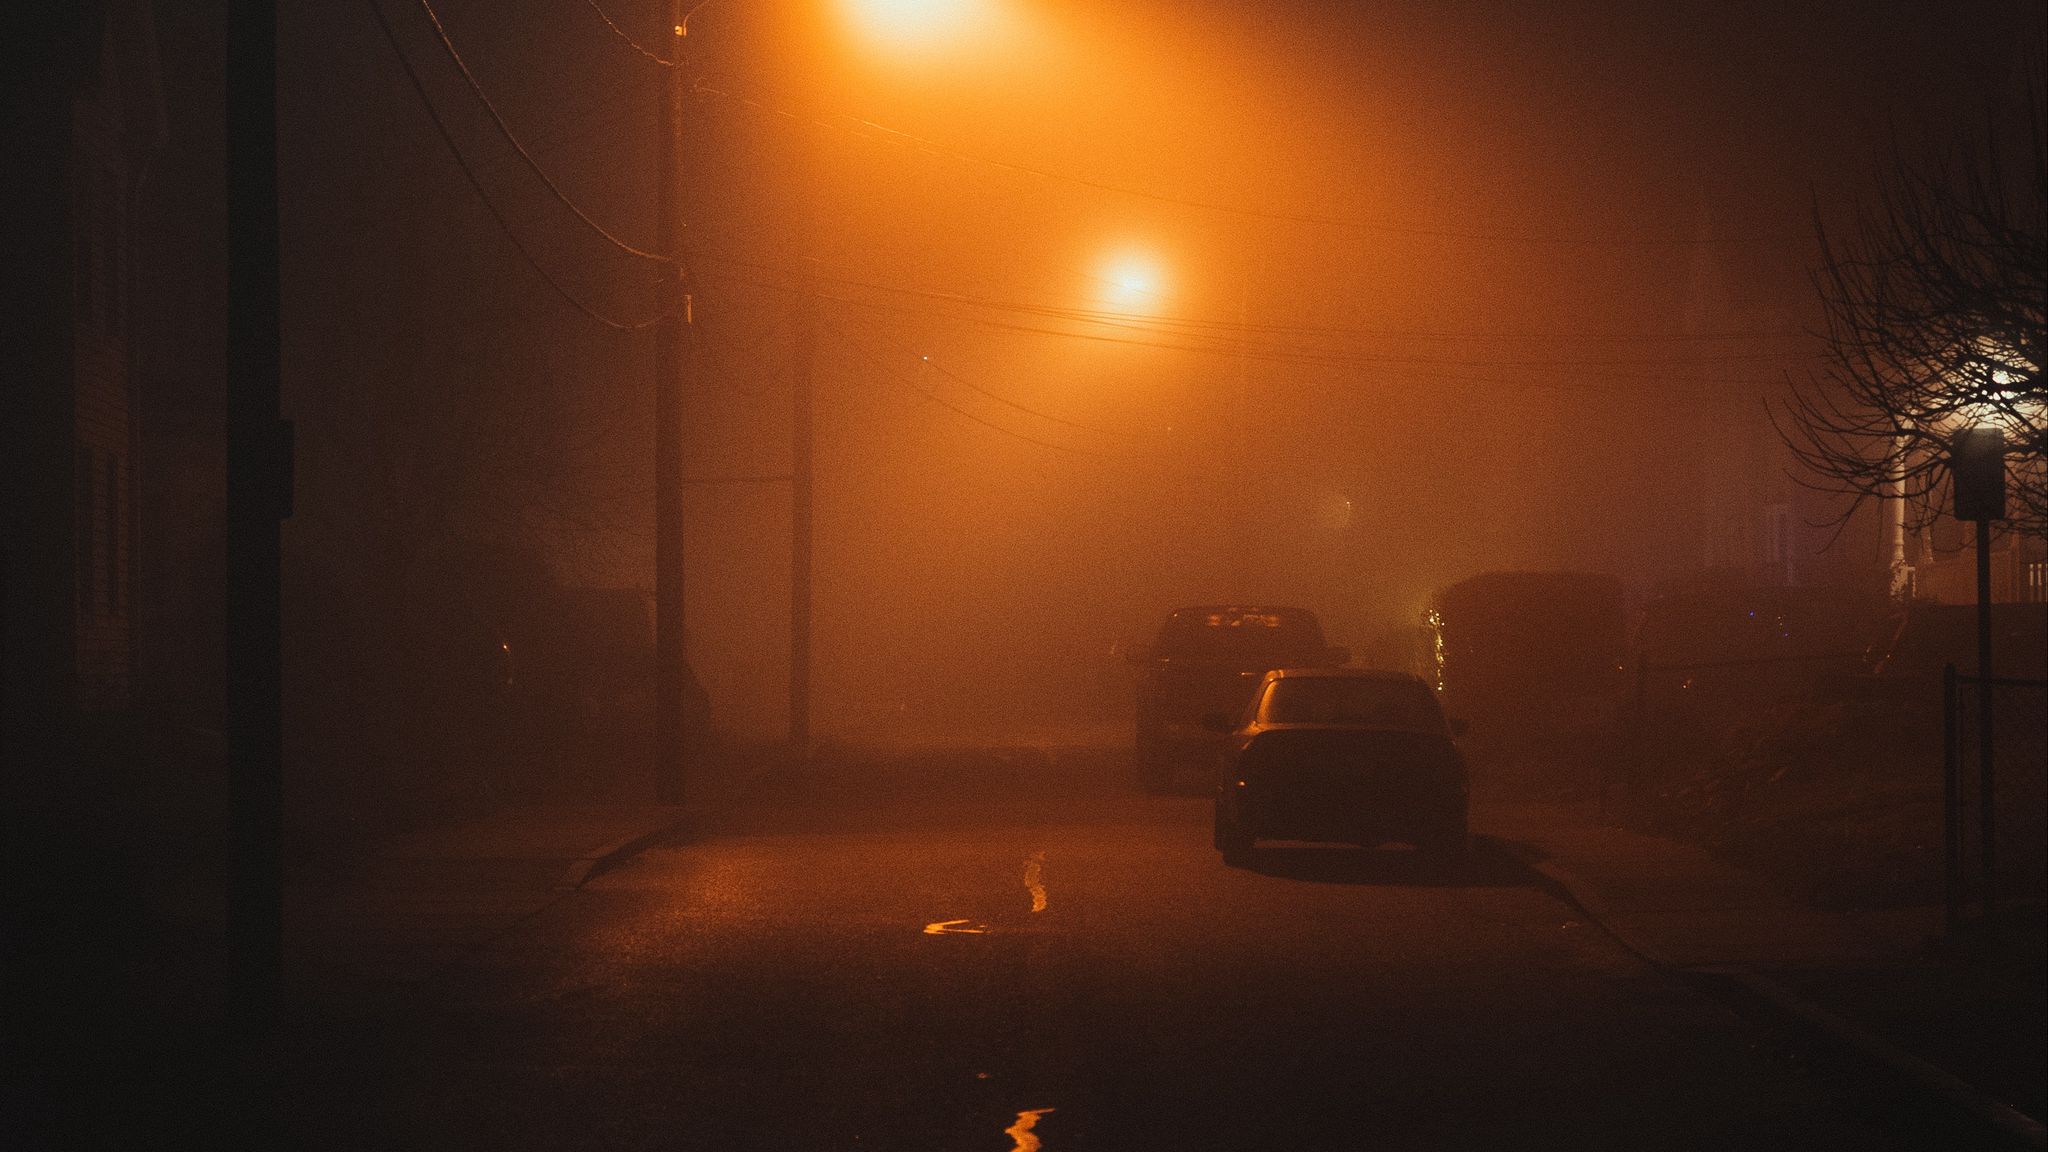 Туман ночью. Ночь улица туман. Ночная туманная улица. Ночной город в тумане. Днем свет ночью тьма